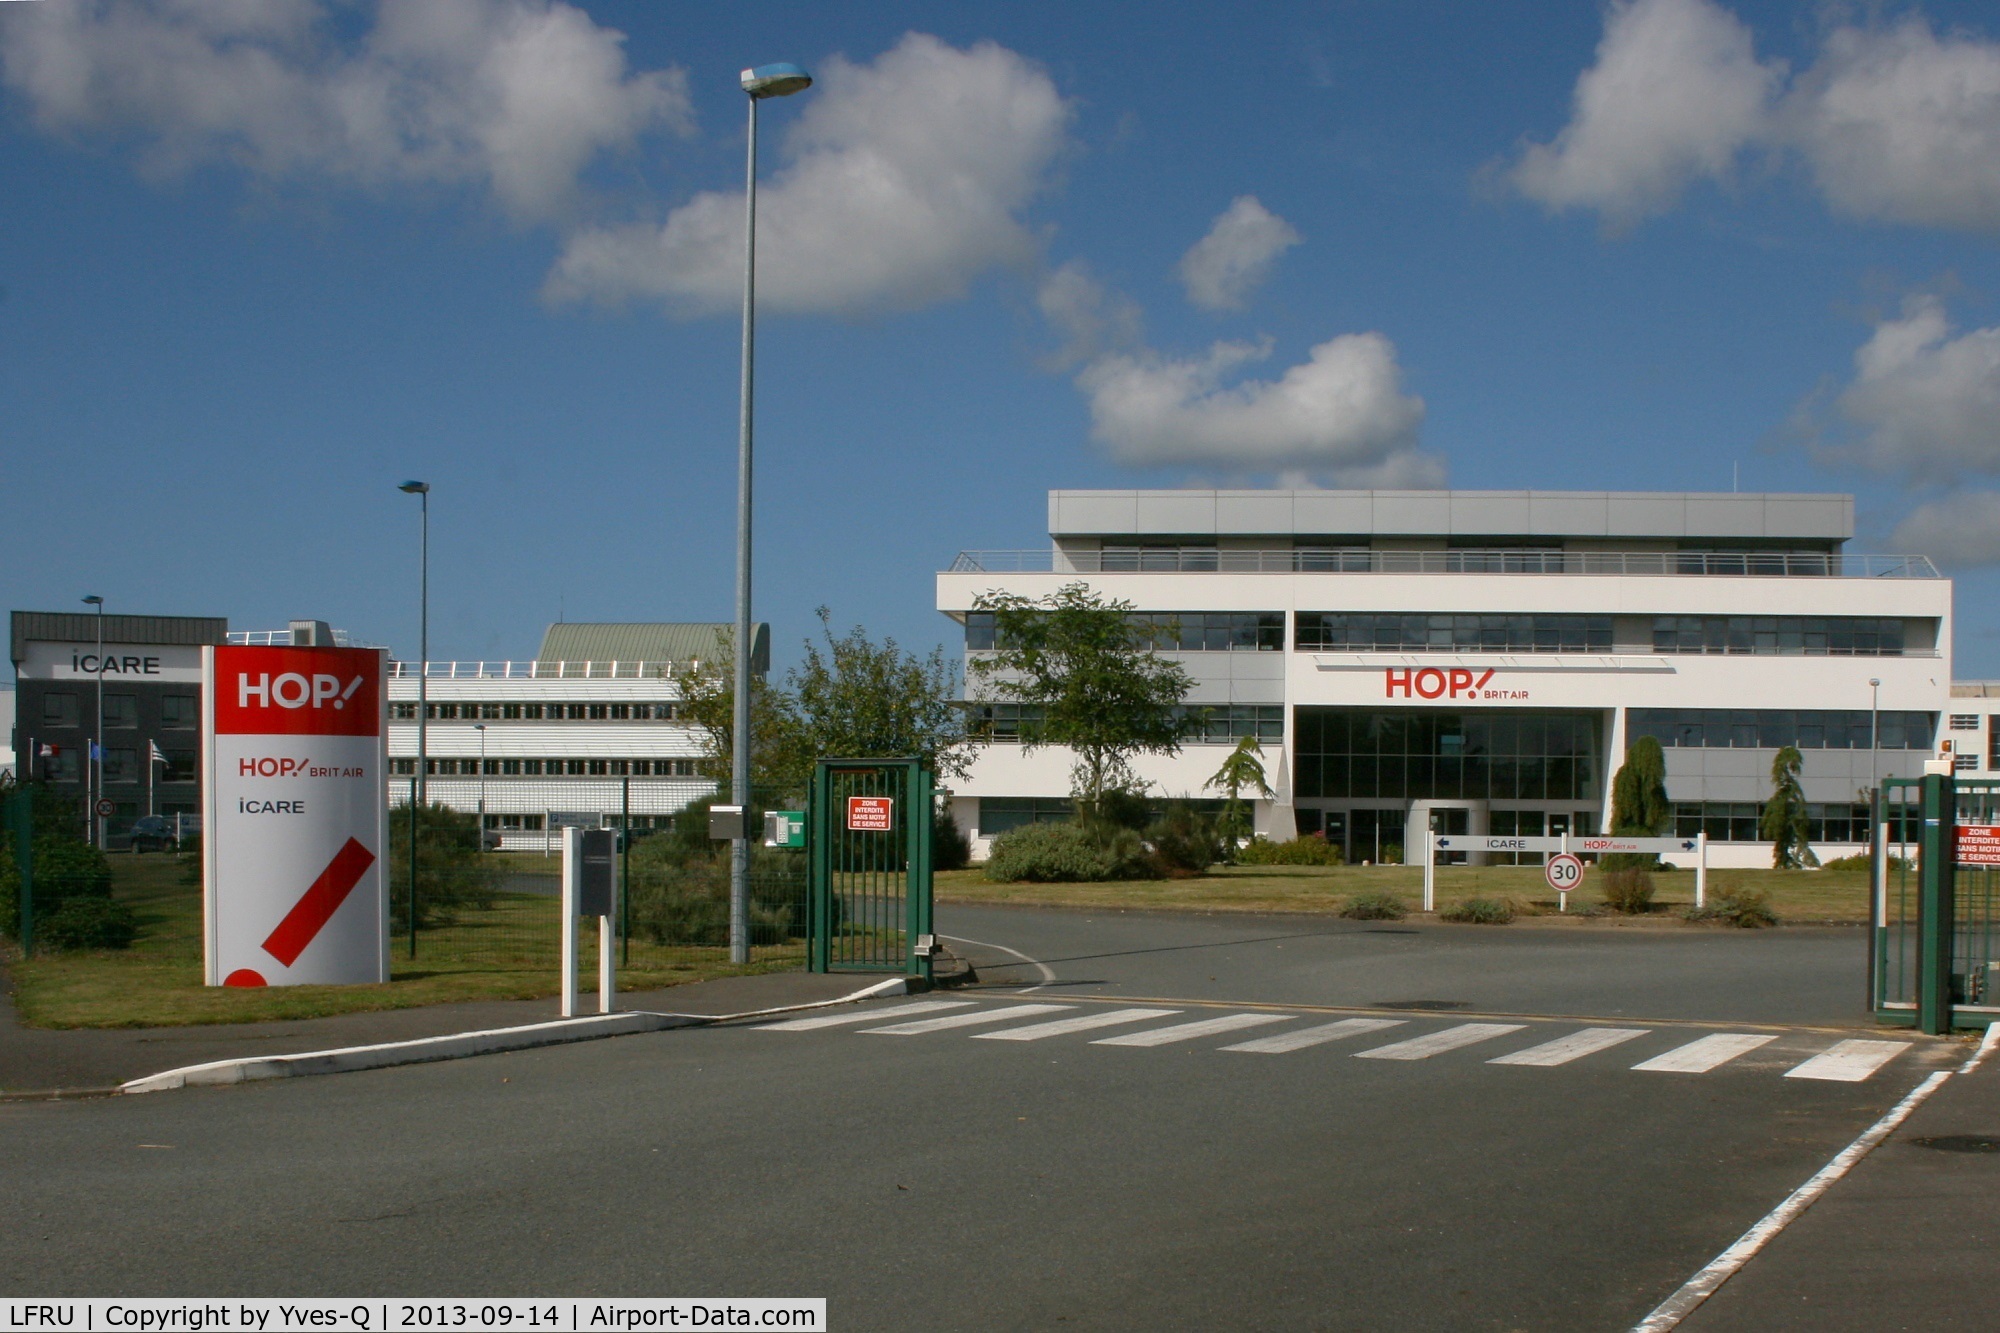 Morlaix Ploujean Airport, Morlaix France (LFRU) - HOP! Brit Air Head Office, Morlaix-Ploujean Airport (LFRU-MXN)